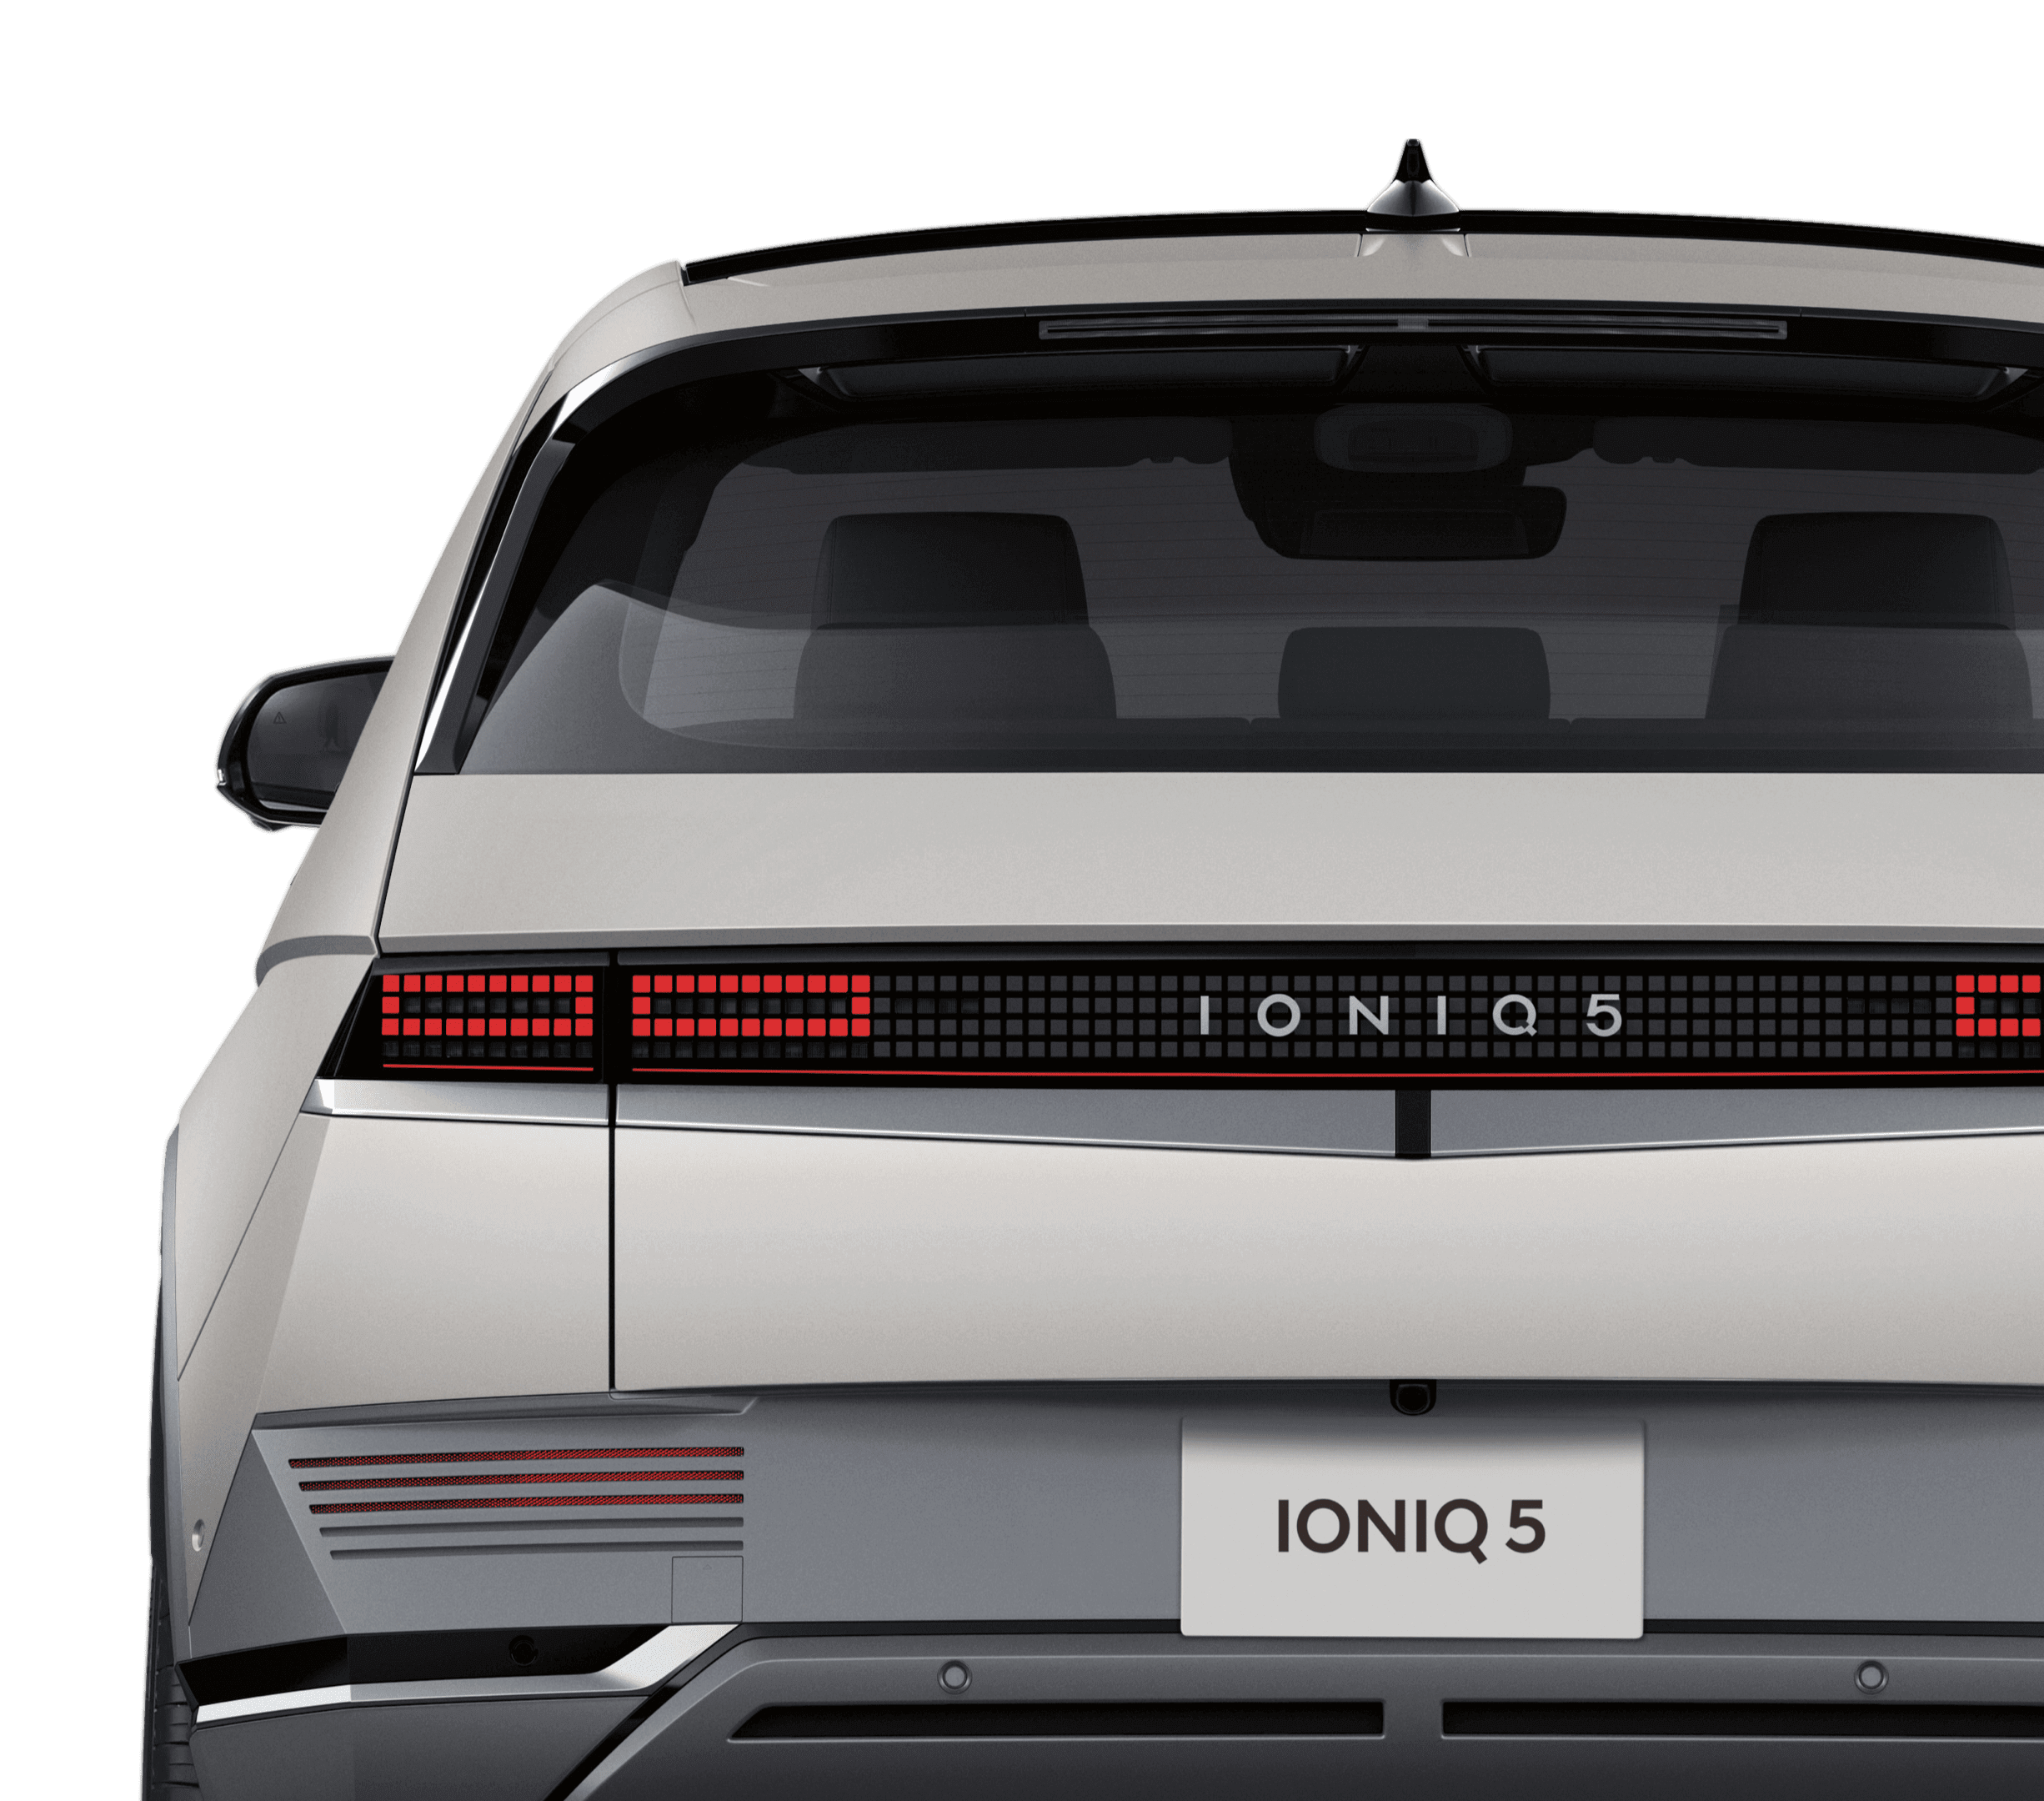 IONIQ 5 (アイオニック 5) 電気自動車 EV オートフラッシュドアハンドル - Hyundai Mobility Japan (ヒョンデモビリティジャパン)